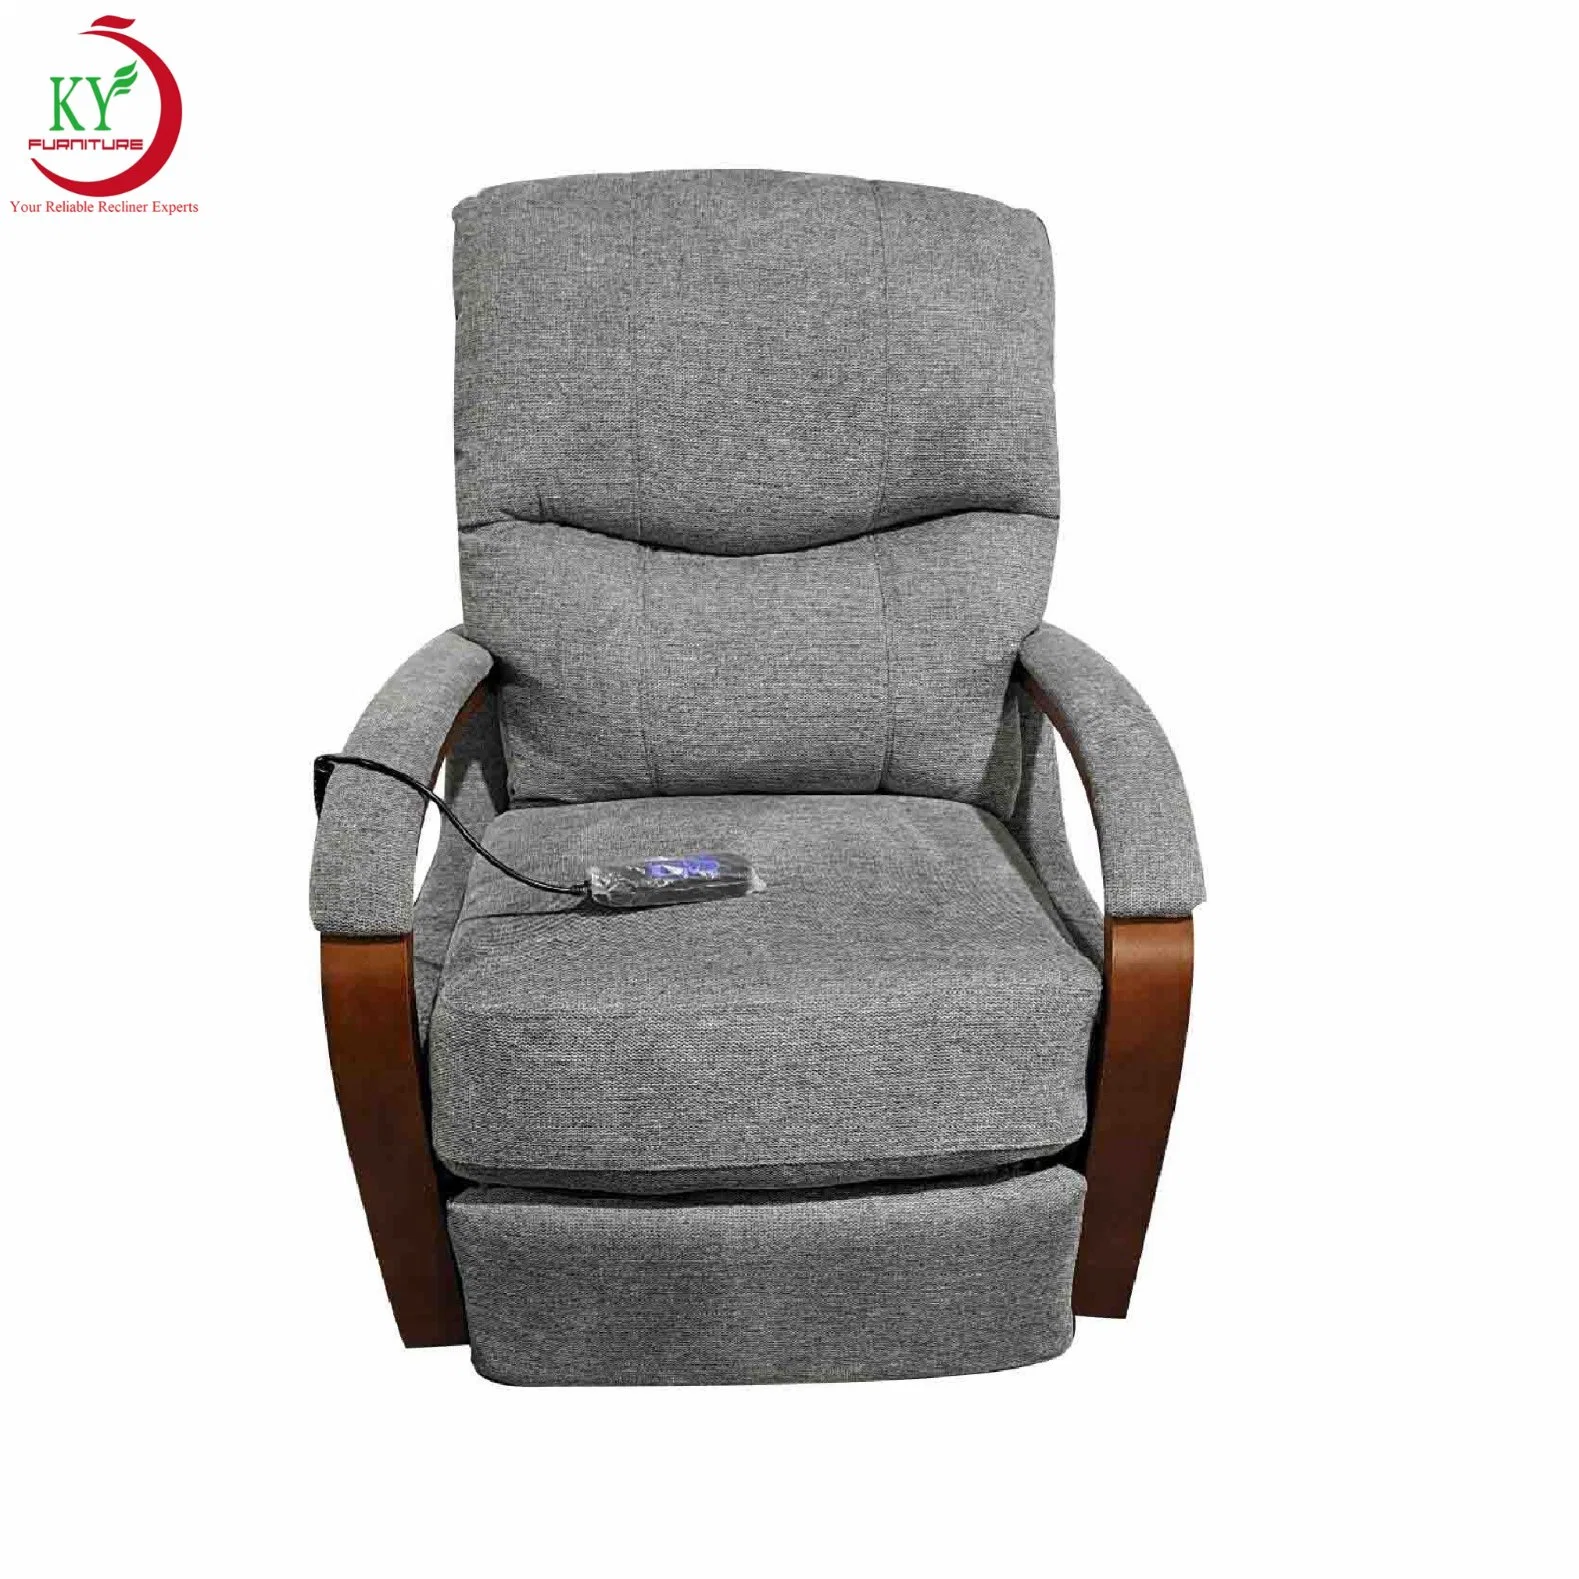 Jky Möbel Air Leder Power Riser Lift Recliner Stuhl mit Massage-Funktion für ältere und behinderte Menschen